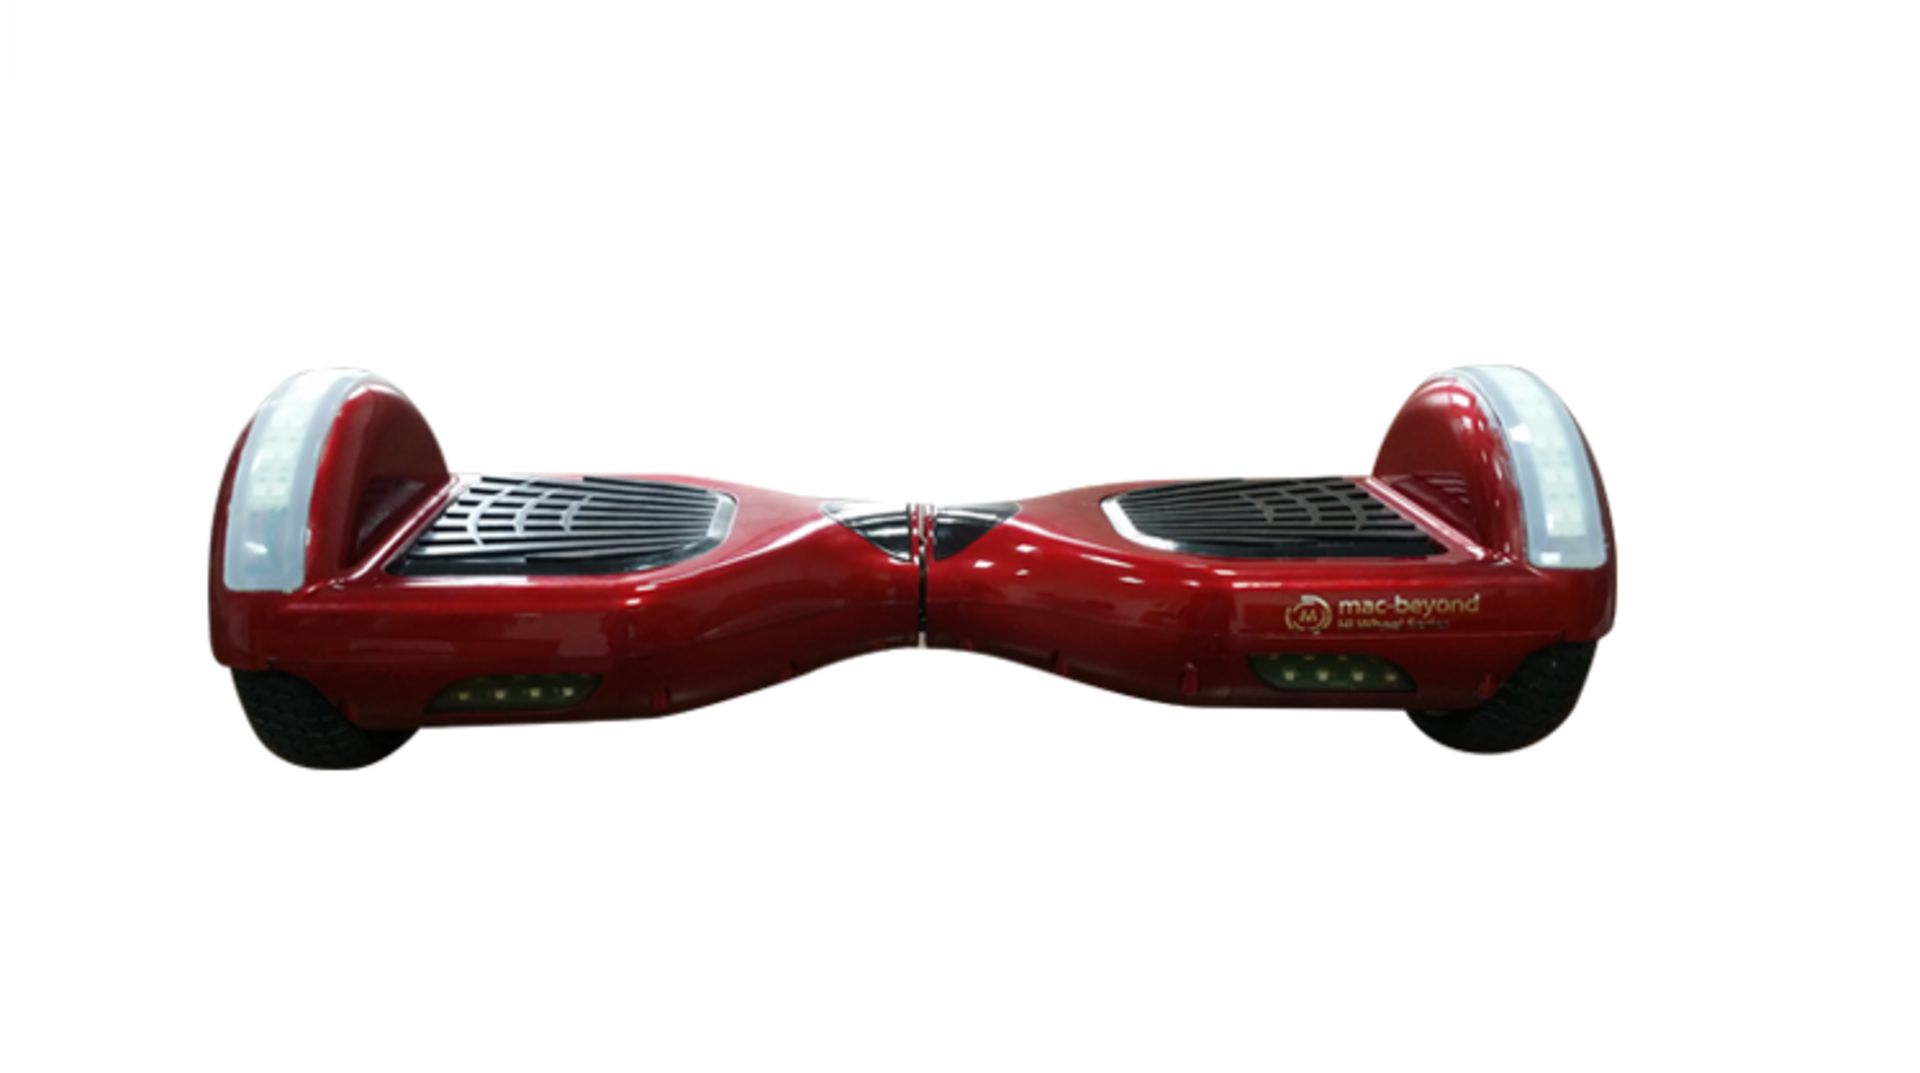 macbeyond x Hi wheel Series, Red Modelæ R2 LED (6.5 inch wheels, Best Seller) Smart personal